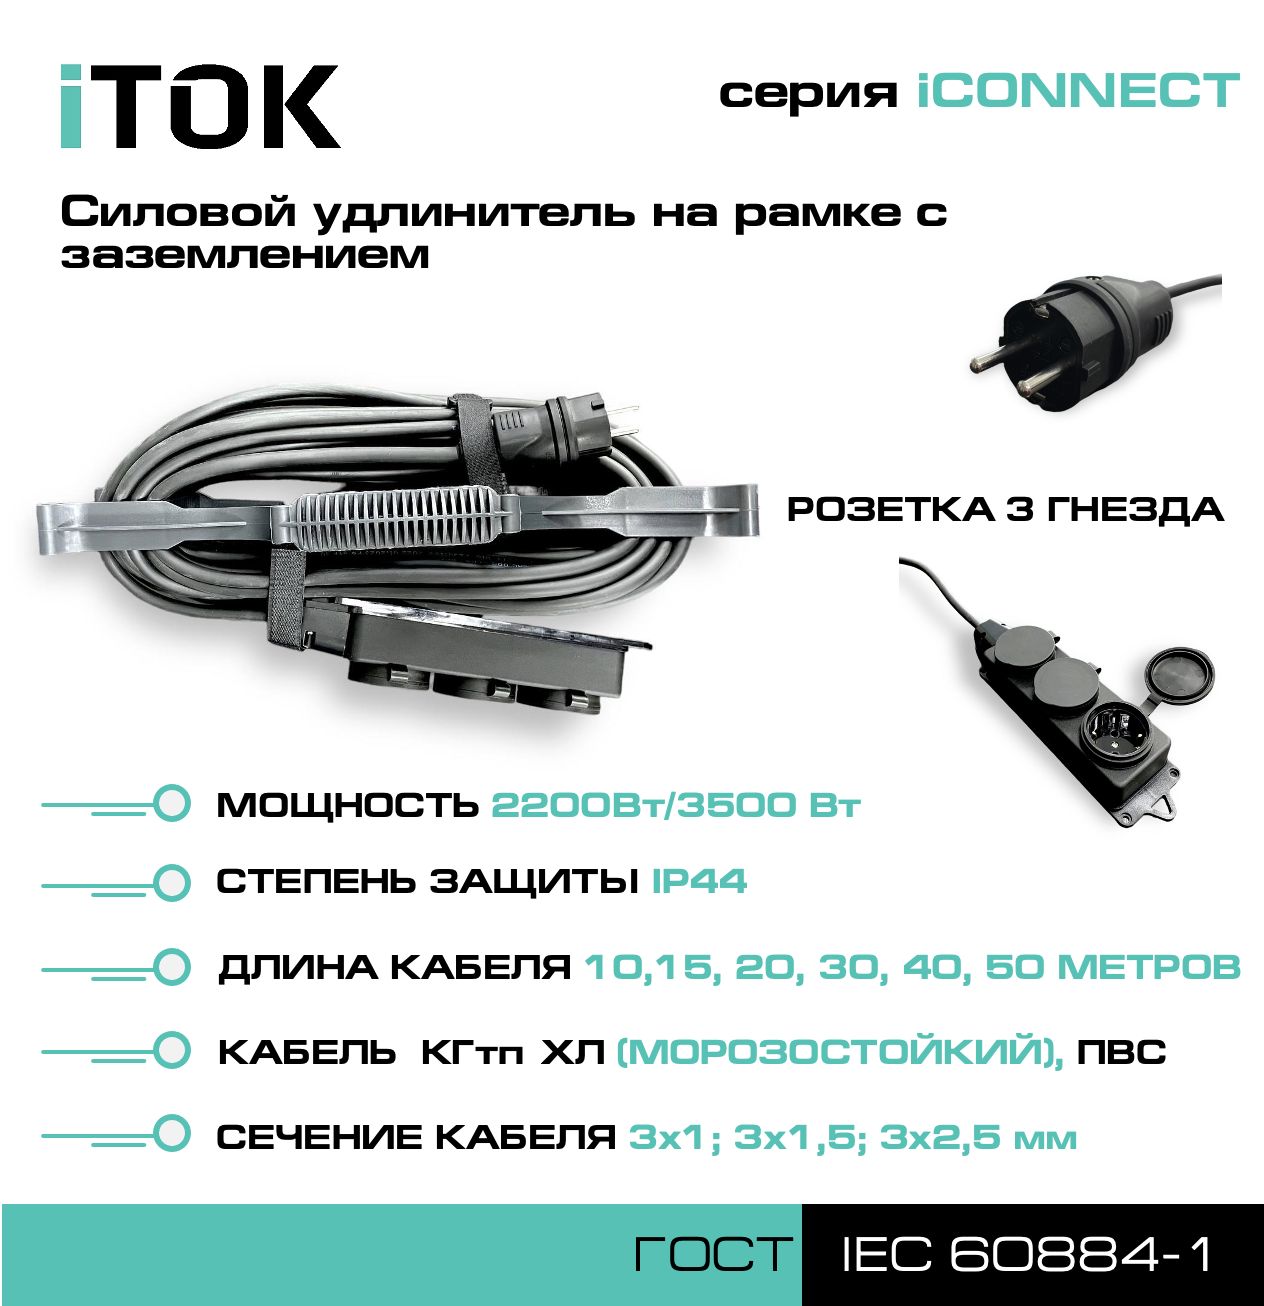 Удлинитель на рамке с заземлением серии iTOK iCONNECT КГтп-ХЛ 3х2,5 мм 3 гнезда IP44 15 м